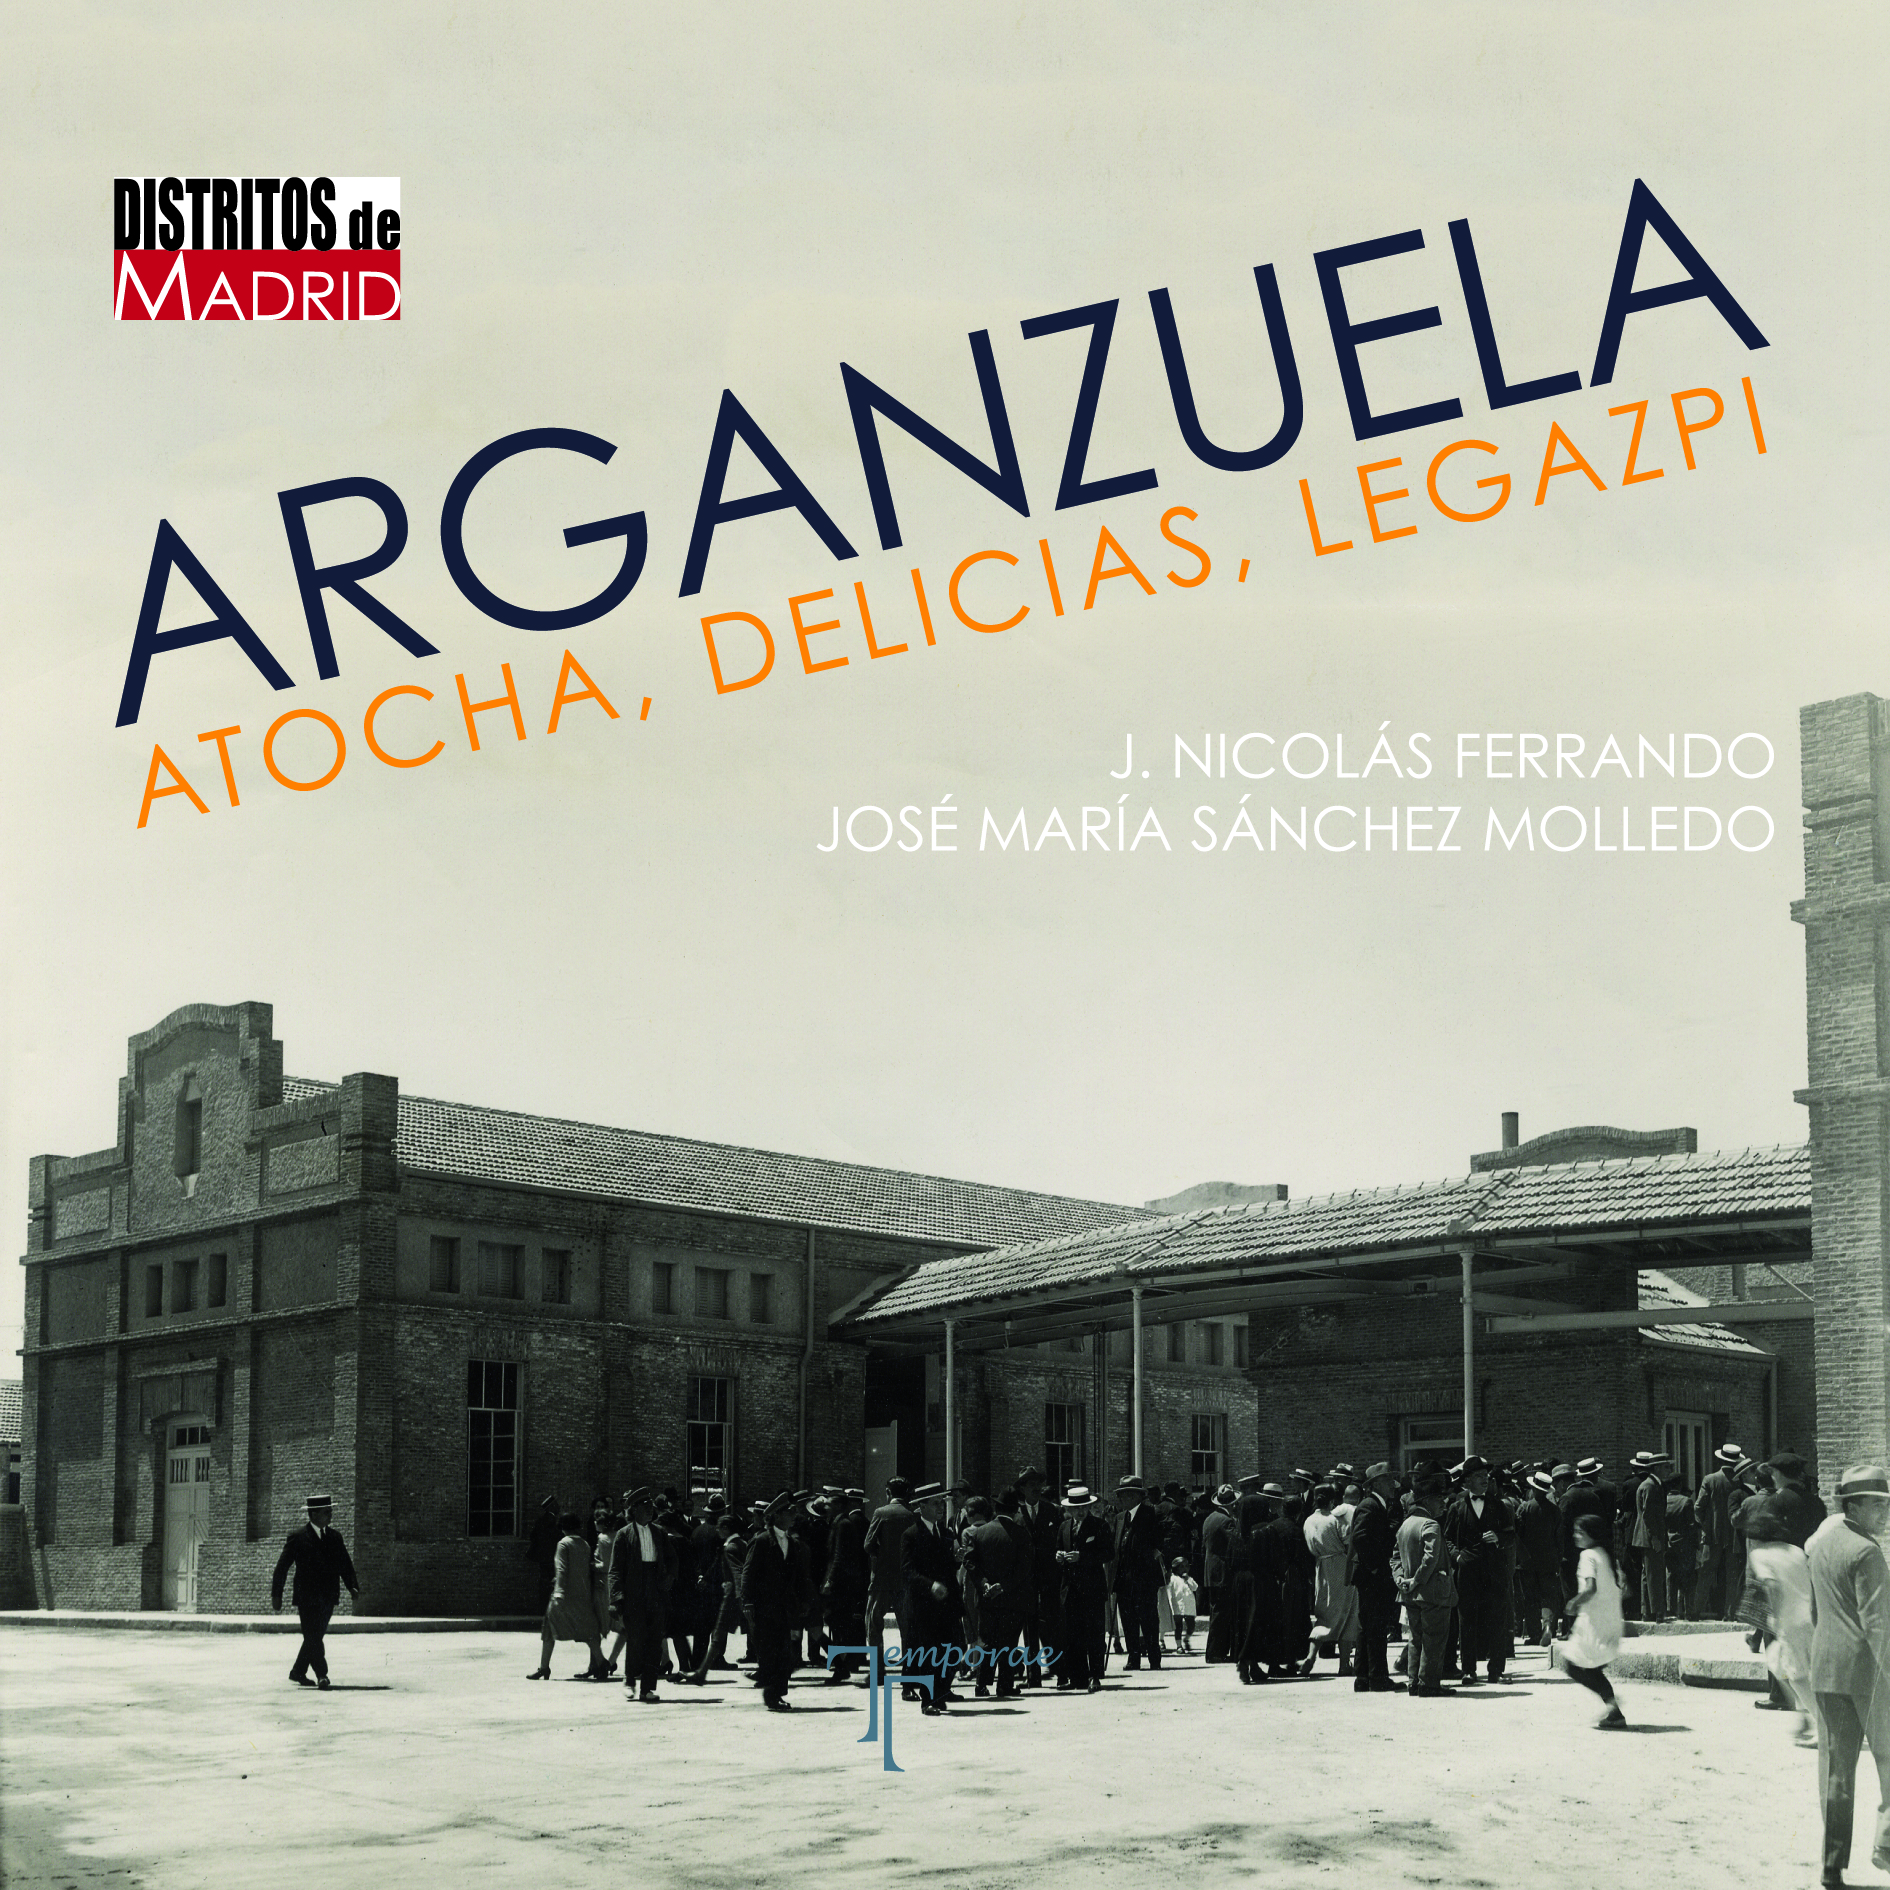 Recomendamos… ‘Arganzuela: Atocha, Delicias y Legazpi’